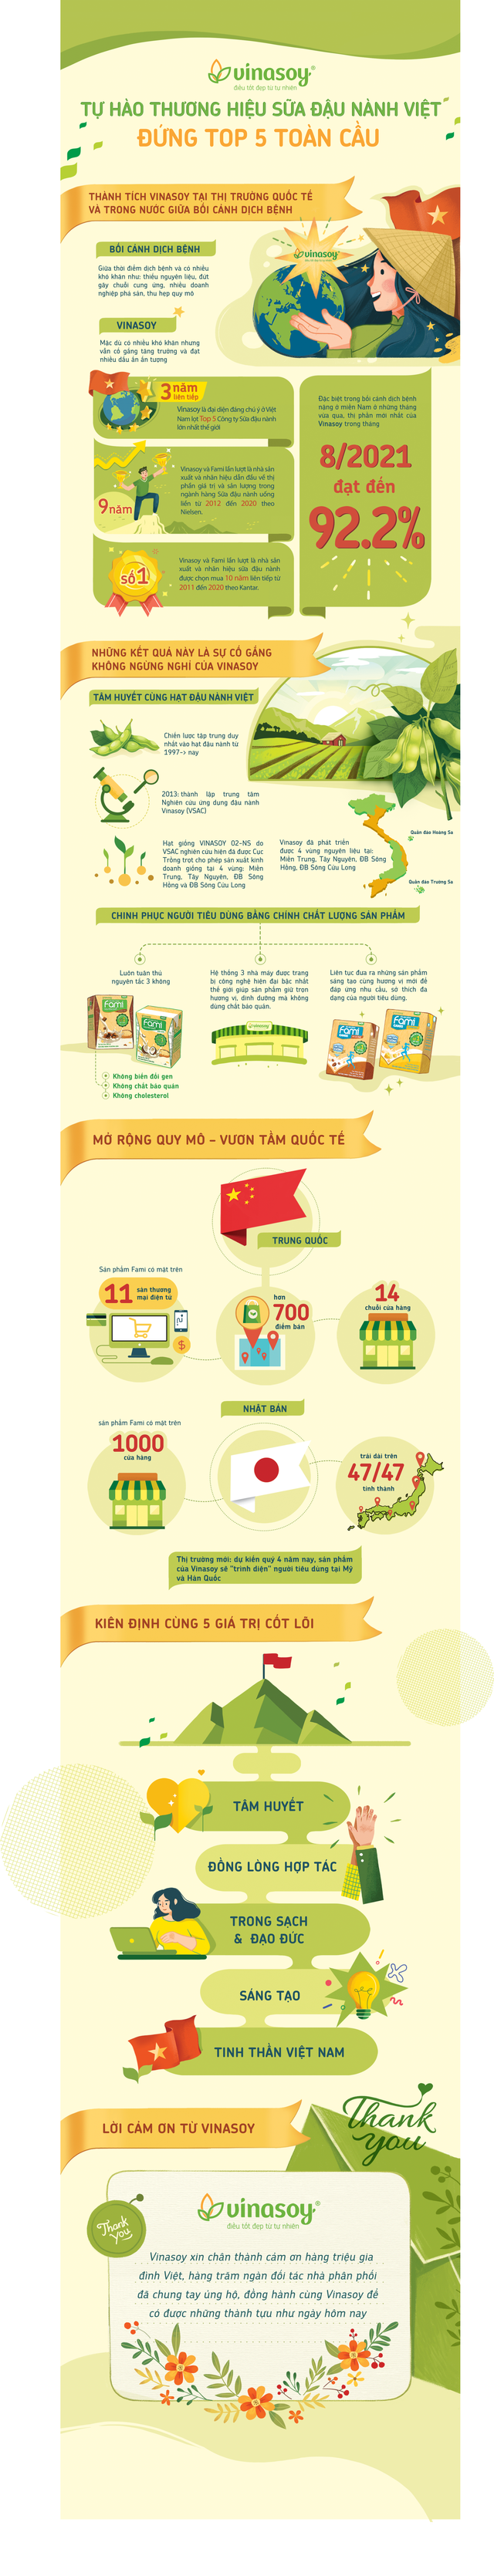 Tự hào thương hiệu sữa đậu nành Việt đứng top 5 toàn cầu - Ảnh 1.